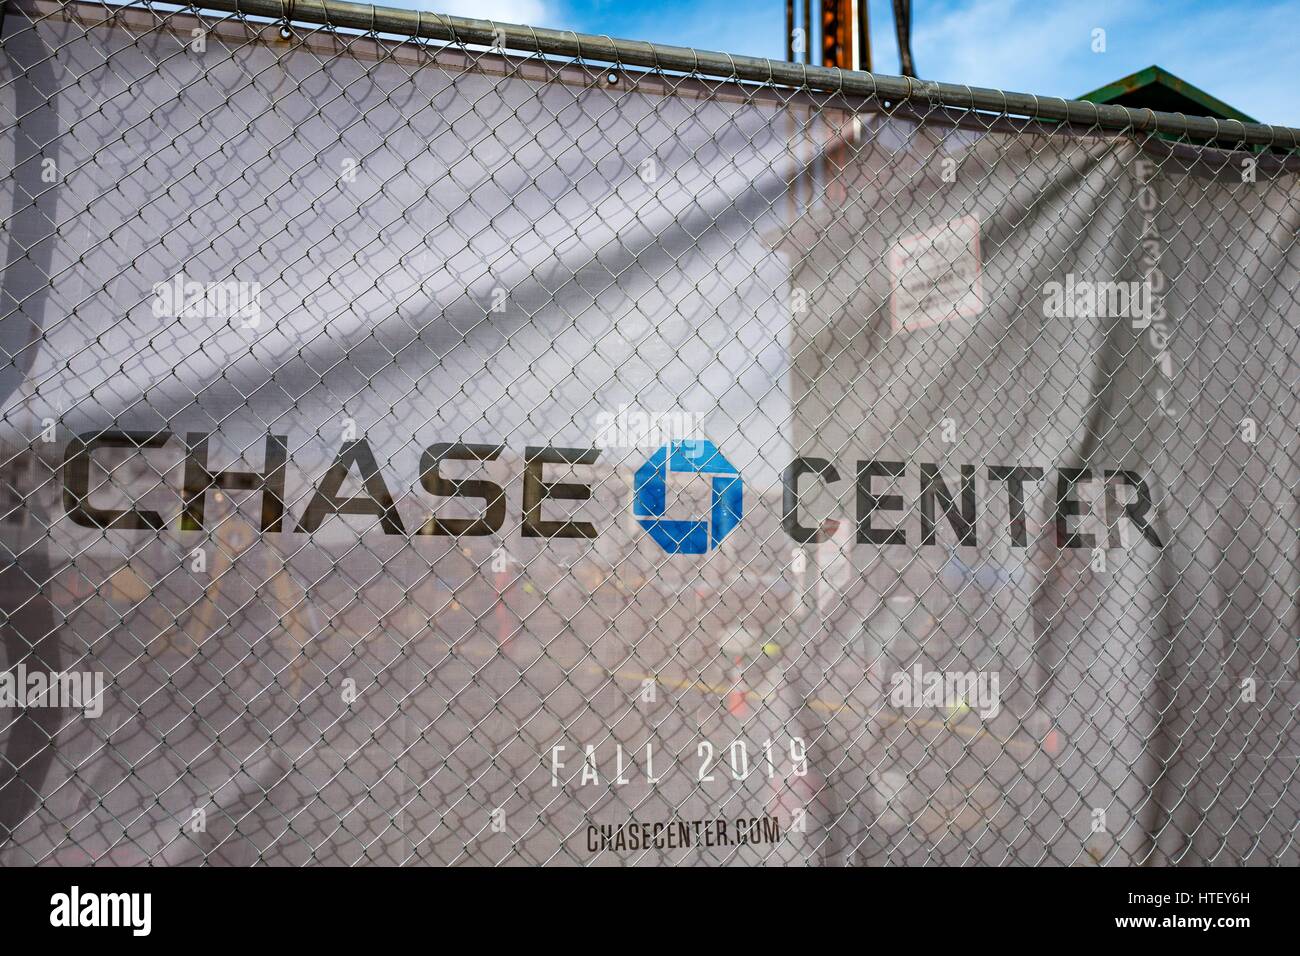 En el barrio de Mission Bay de San Francisco, California, se ha comenzado la construcción de Chase Center, el nuevo estadio para el equipo de baloncesto Golden State Warriors, 9 de marzo de 2017 Foto de stock